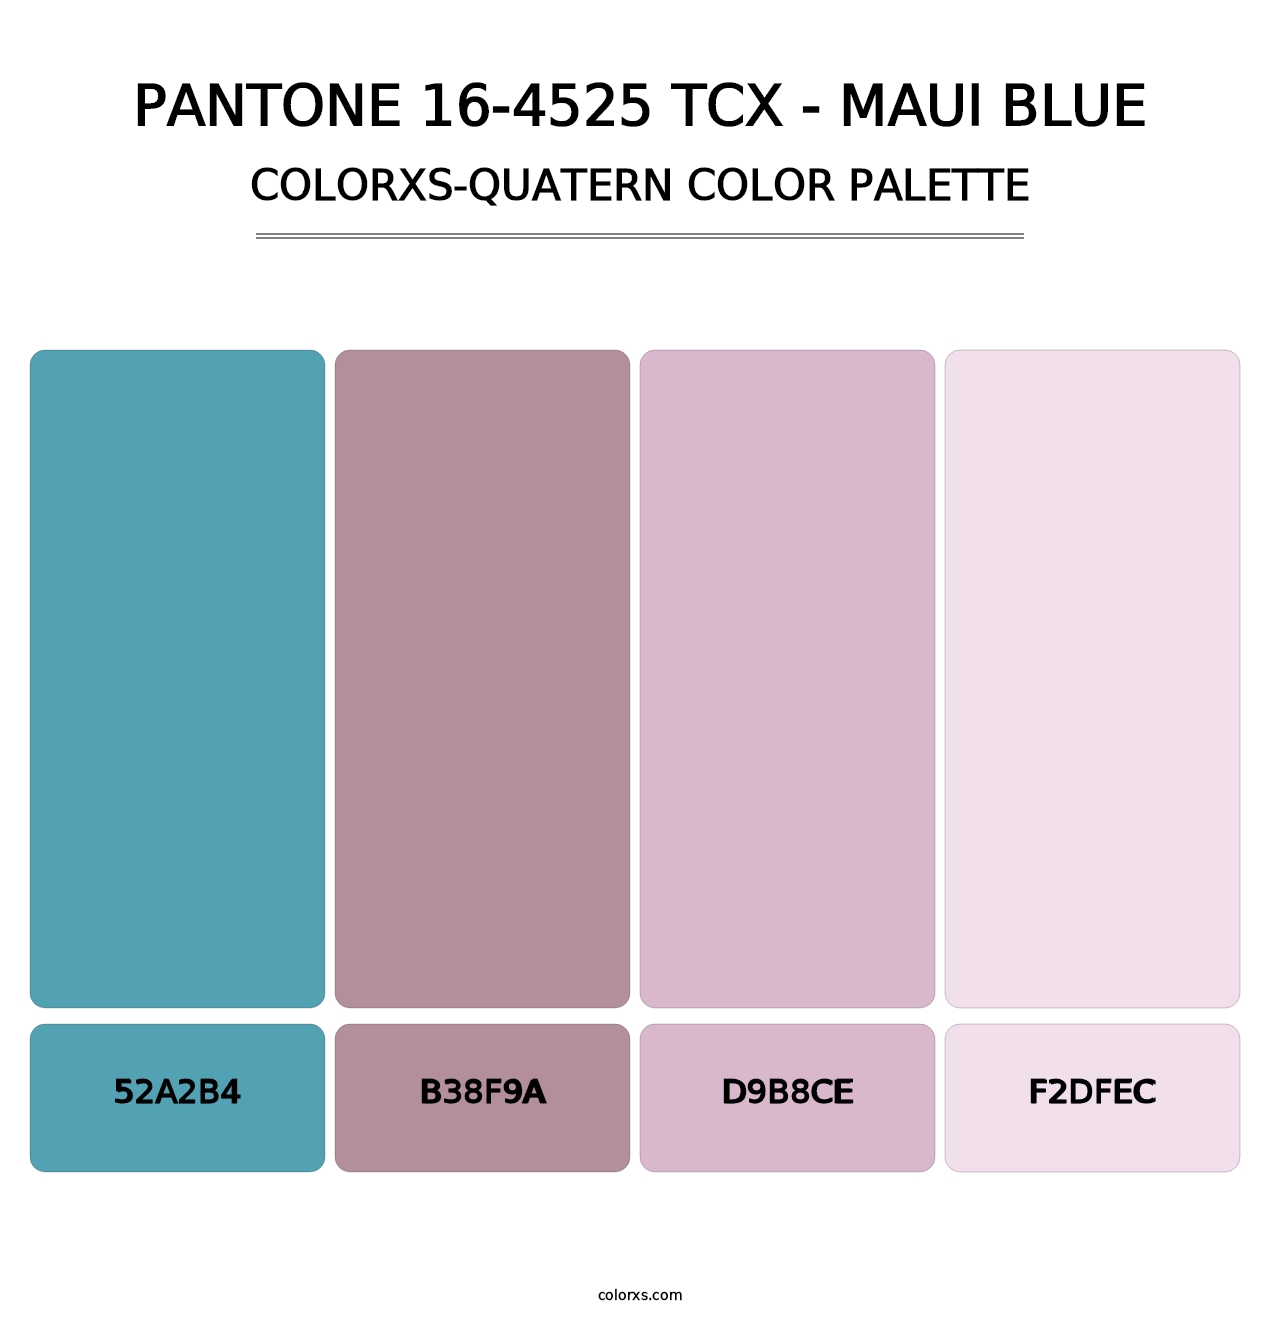 PANTONE 16-4525 TCX - Maui Blue - Colorxs Quatern Palette